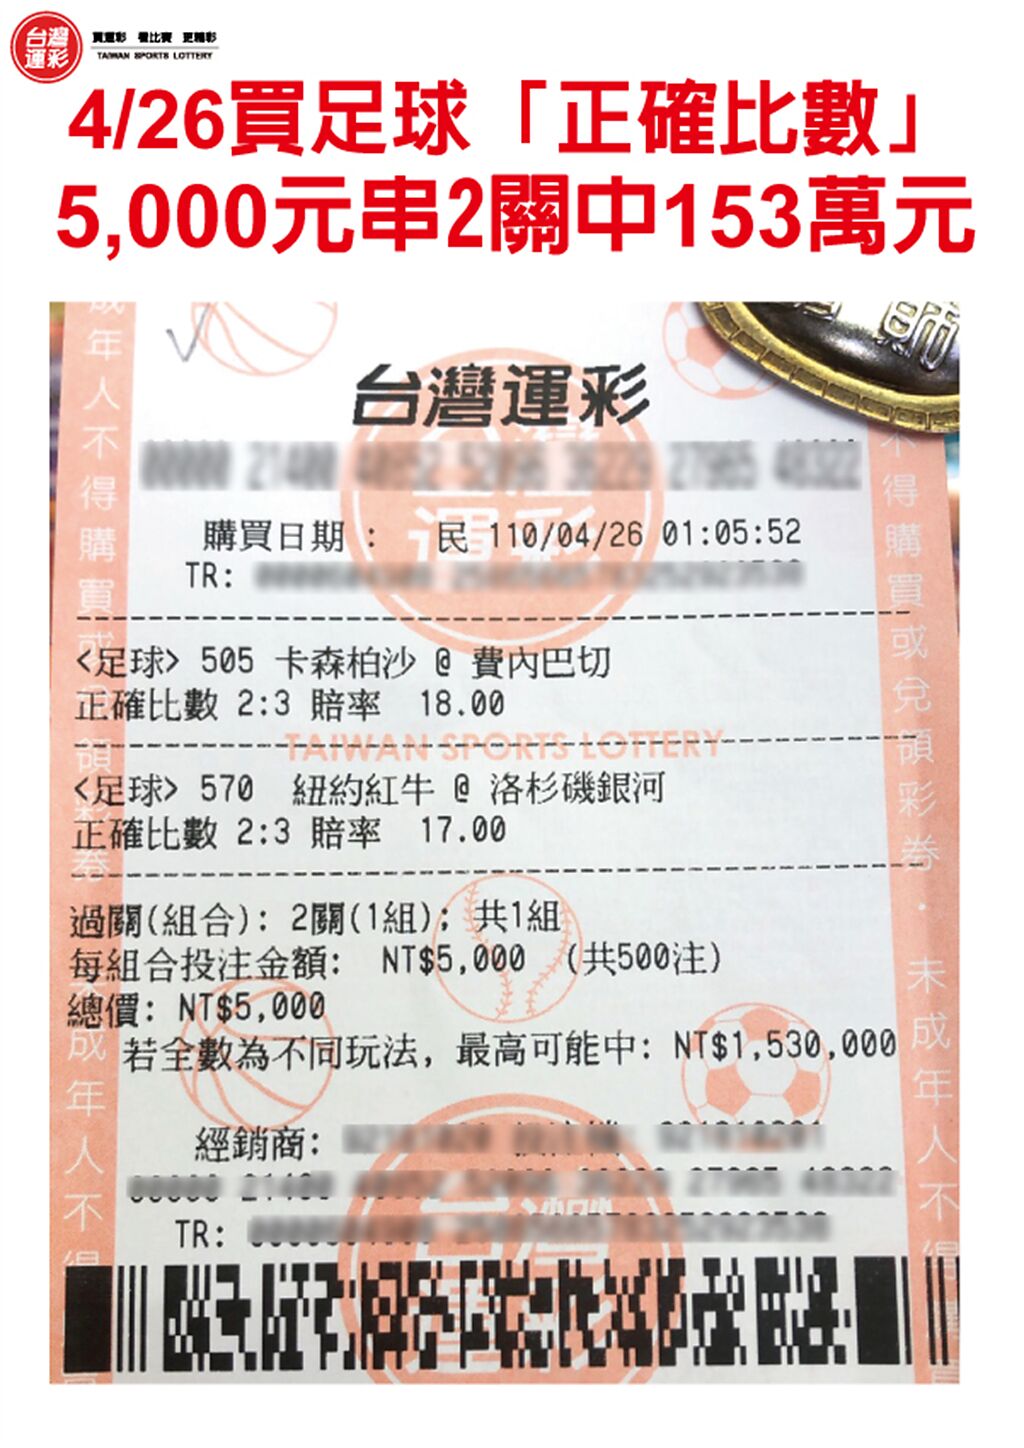 4月26日5000元串2關抱回153萬元彩券。(台灣運彩提供)